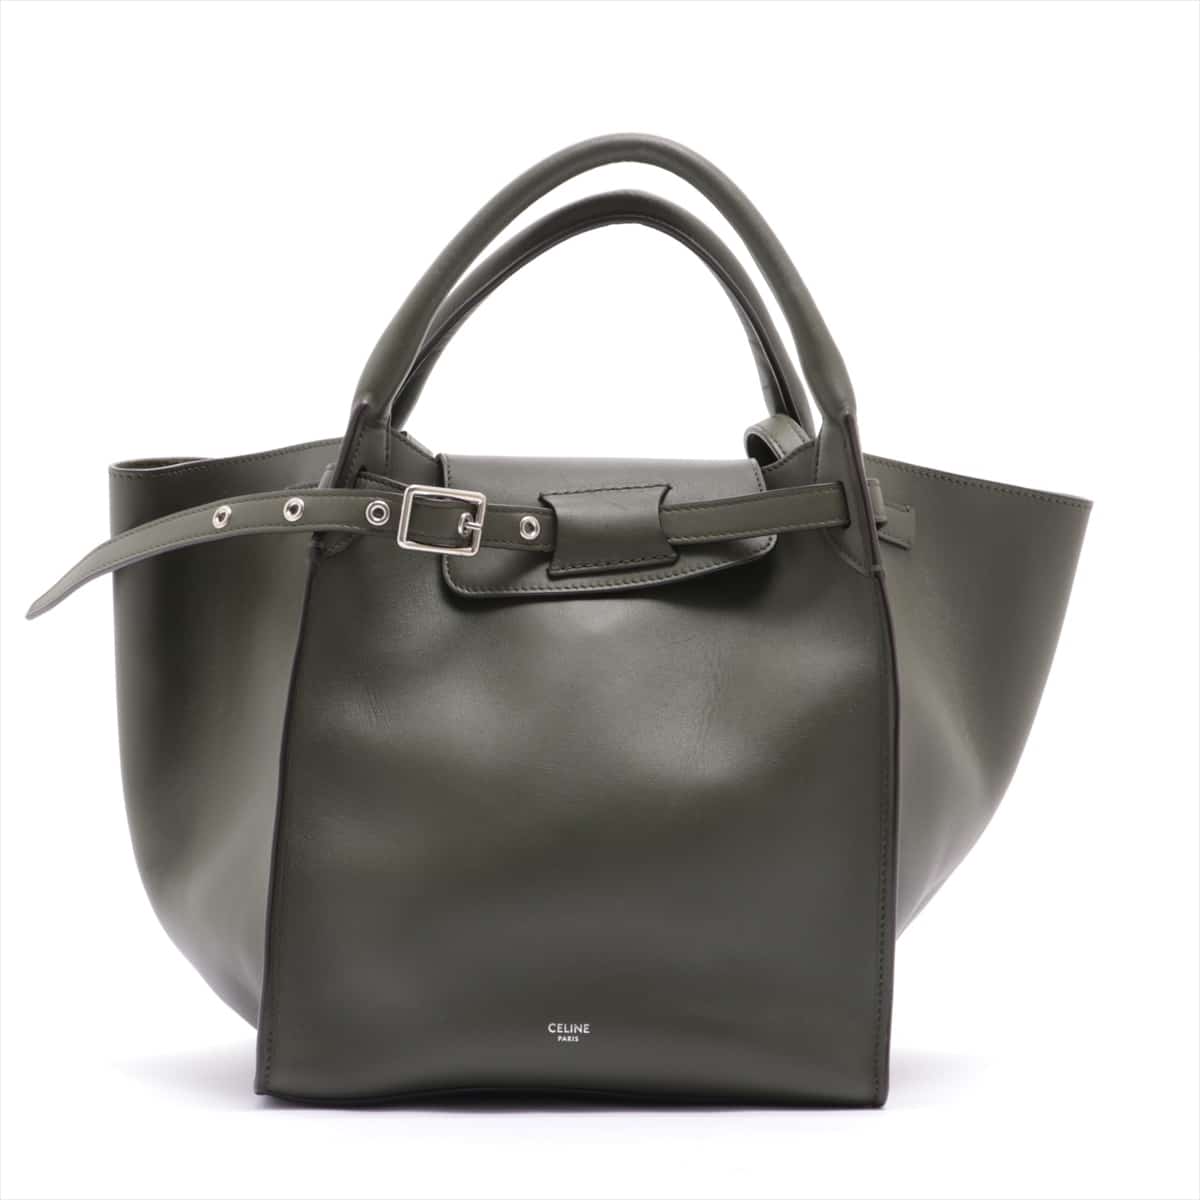 CELINE BIG BAG small Leather 2way handbag Khaki